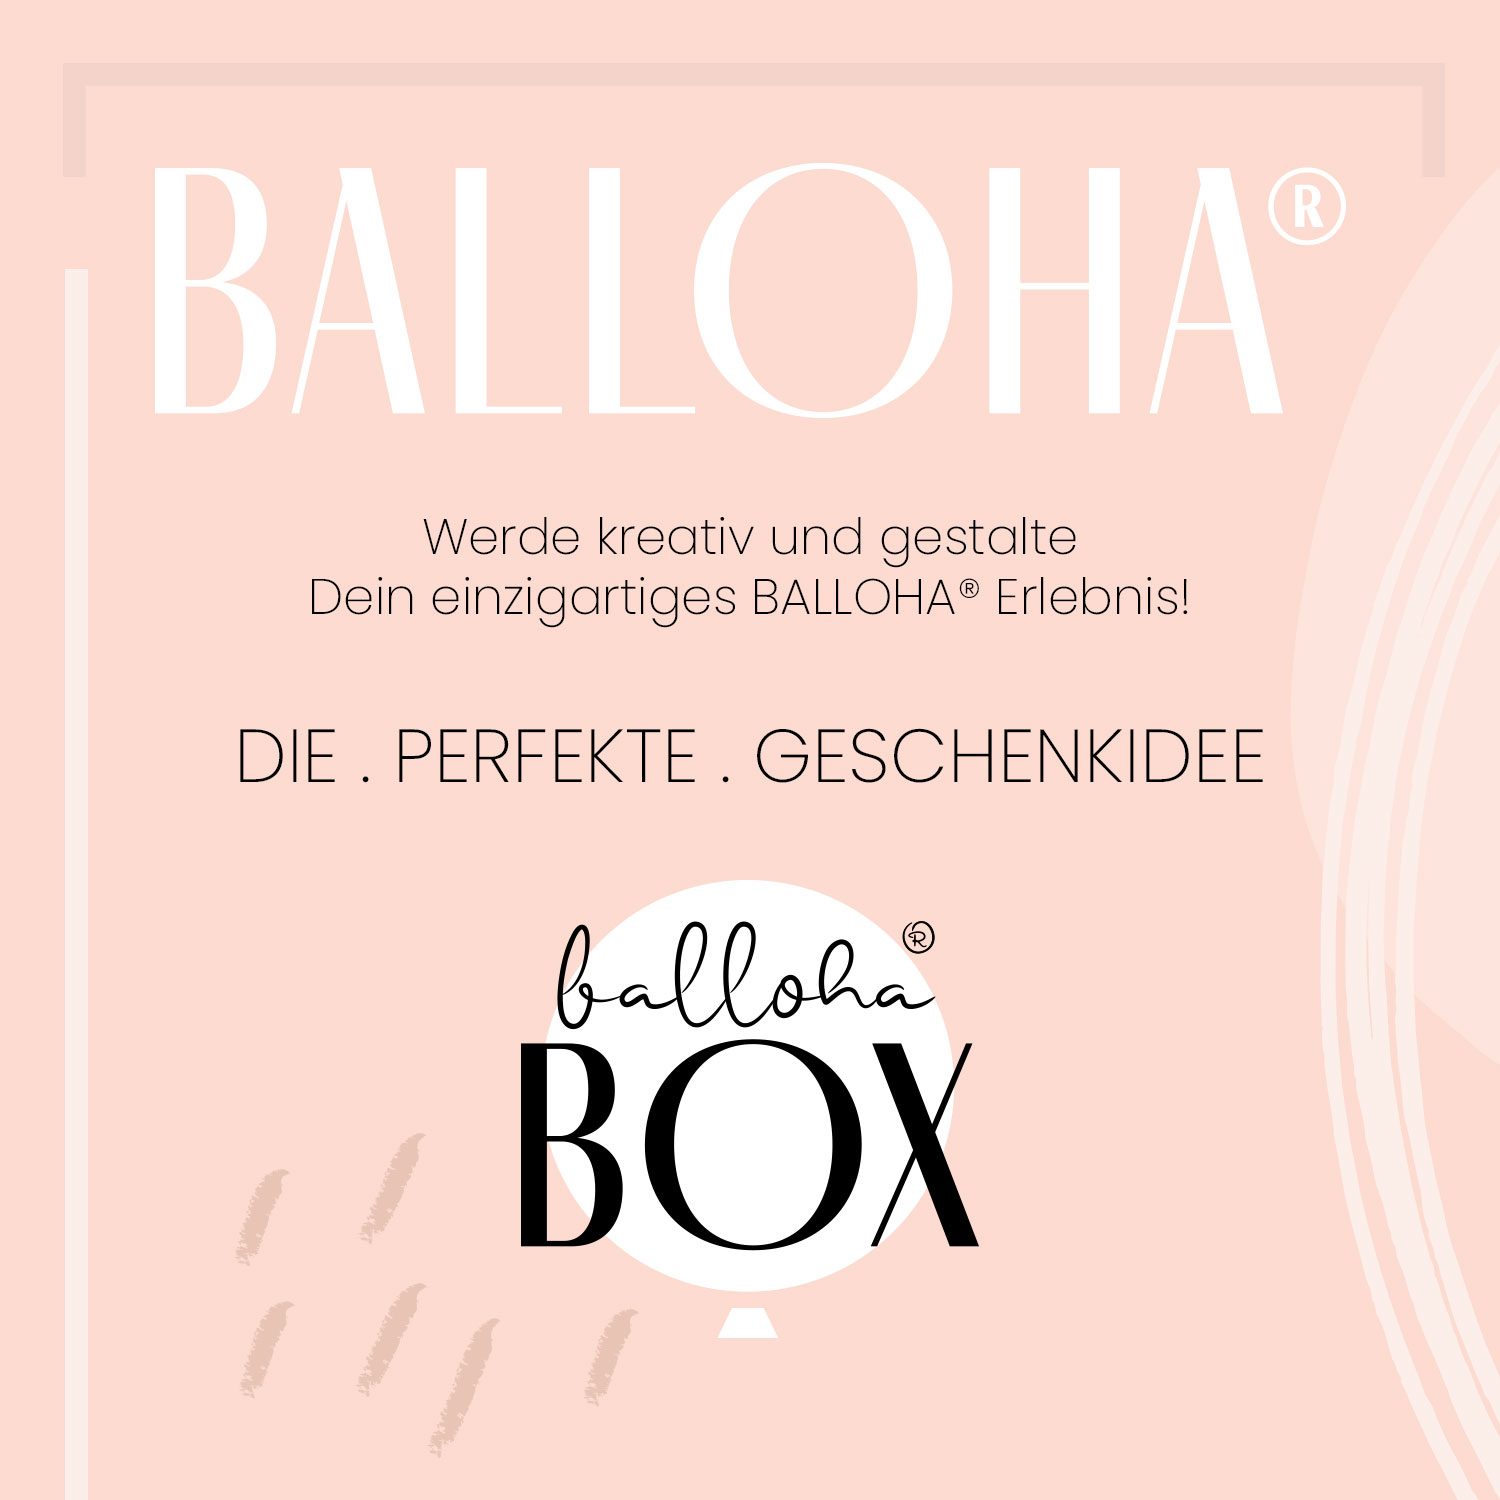 Balloha® Box mit Foto - DIY Greenery